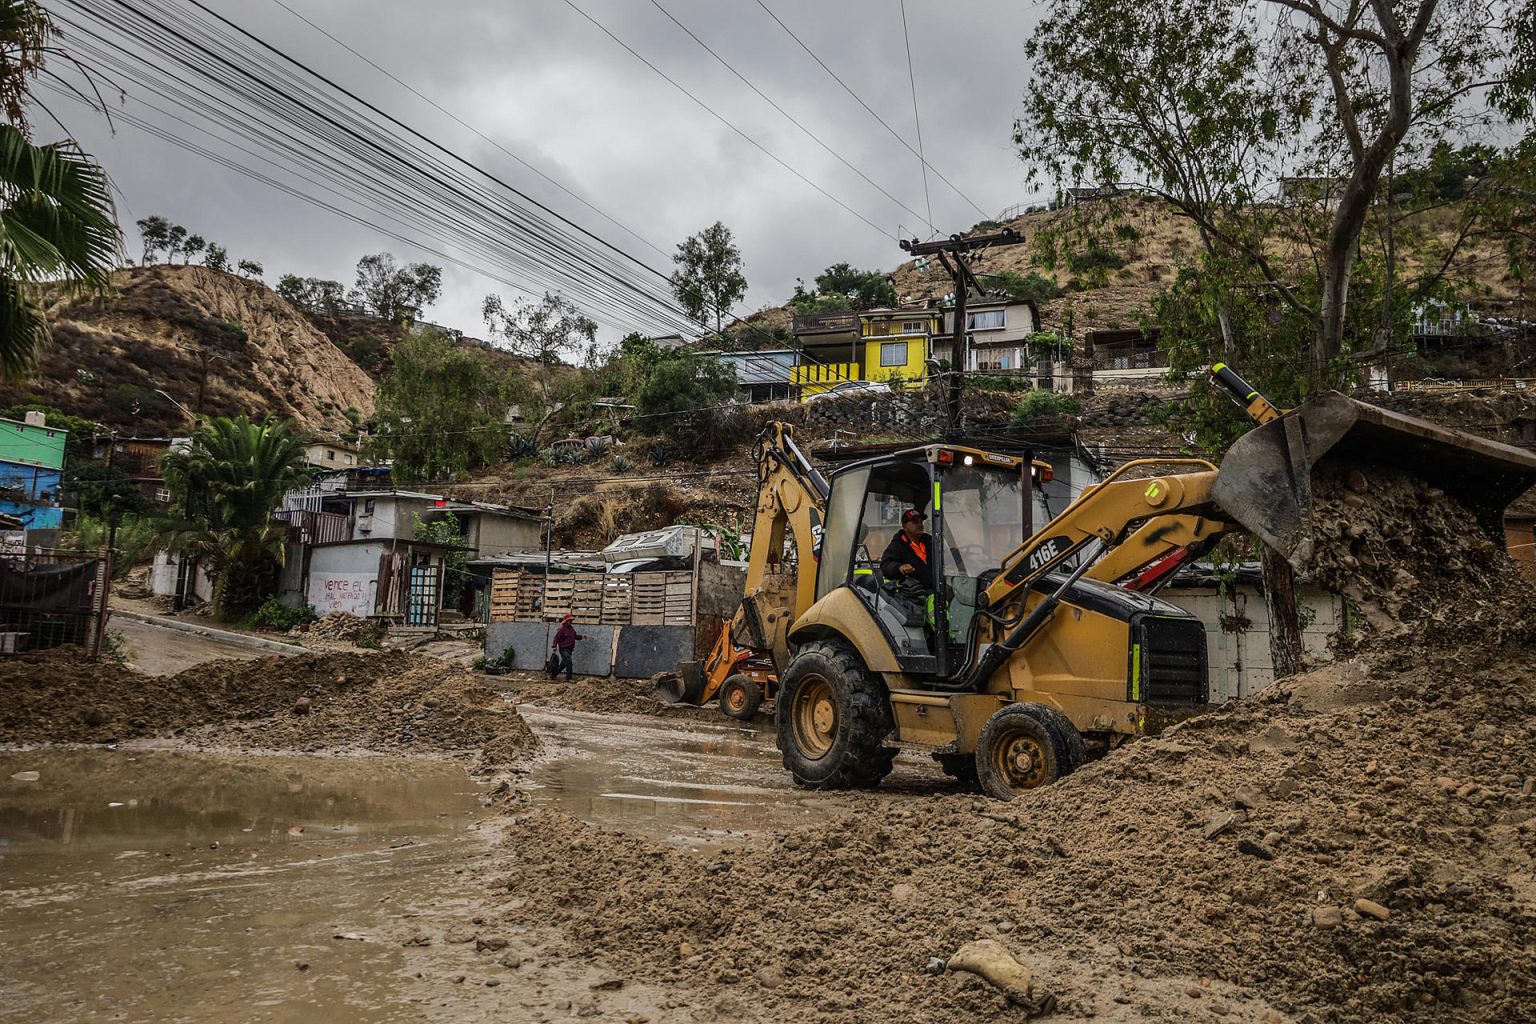 Vista de una Maquina excavadora, recolectando el lodo para abrir caminos hoy en la ciudad de Tijuana en Baja California (México). EFE/Joebeth Terriquez